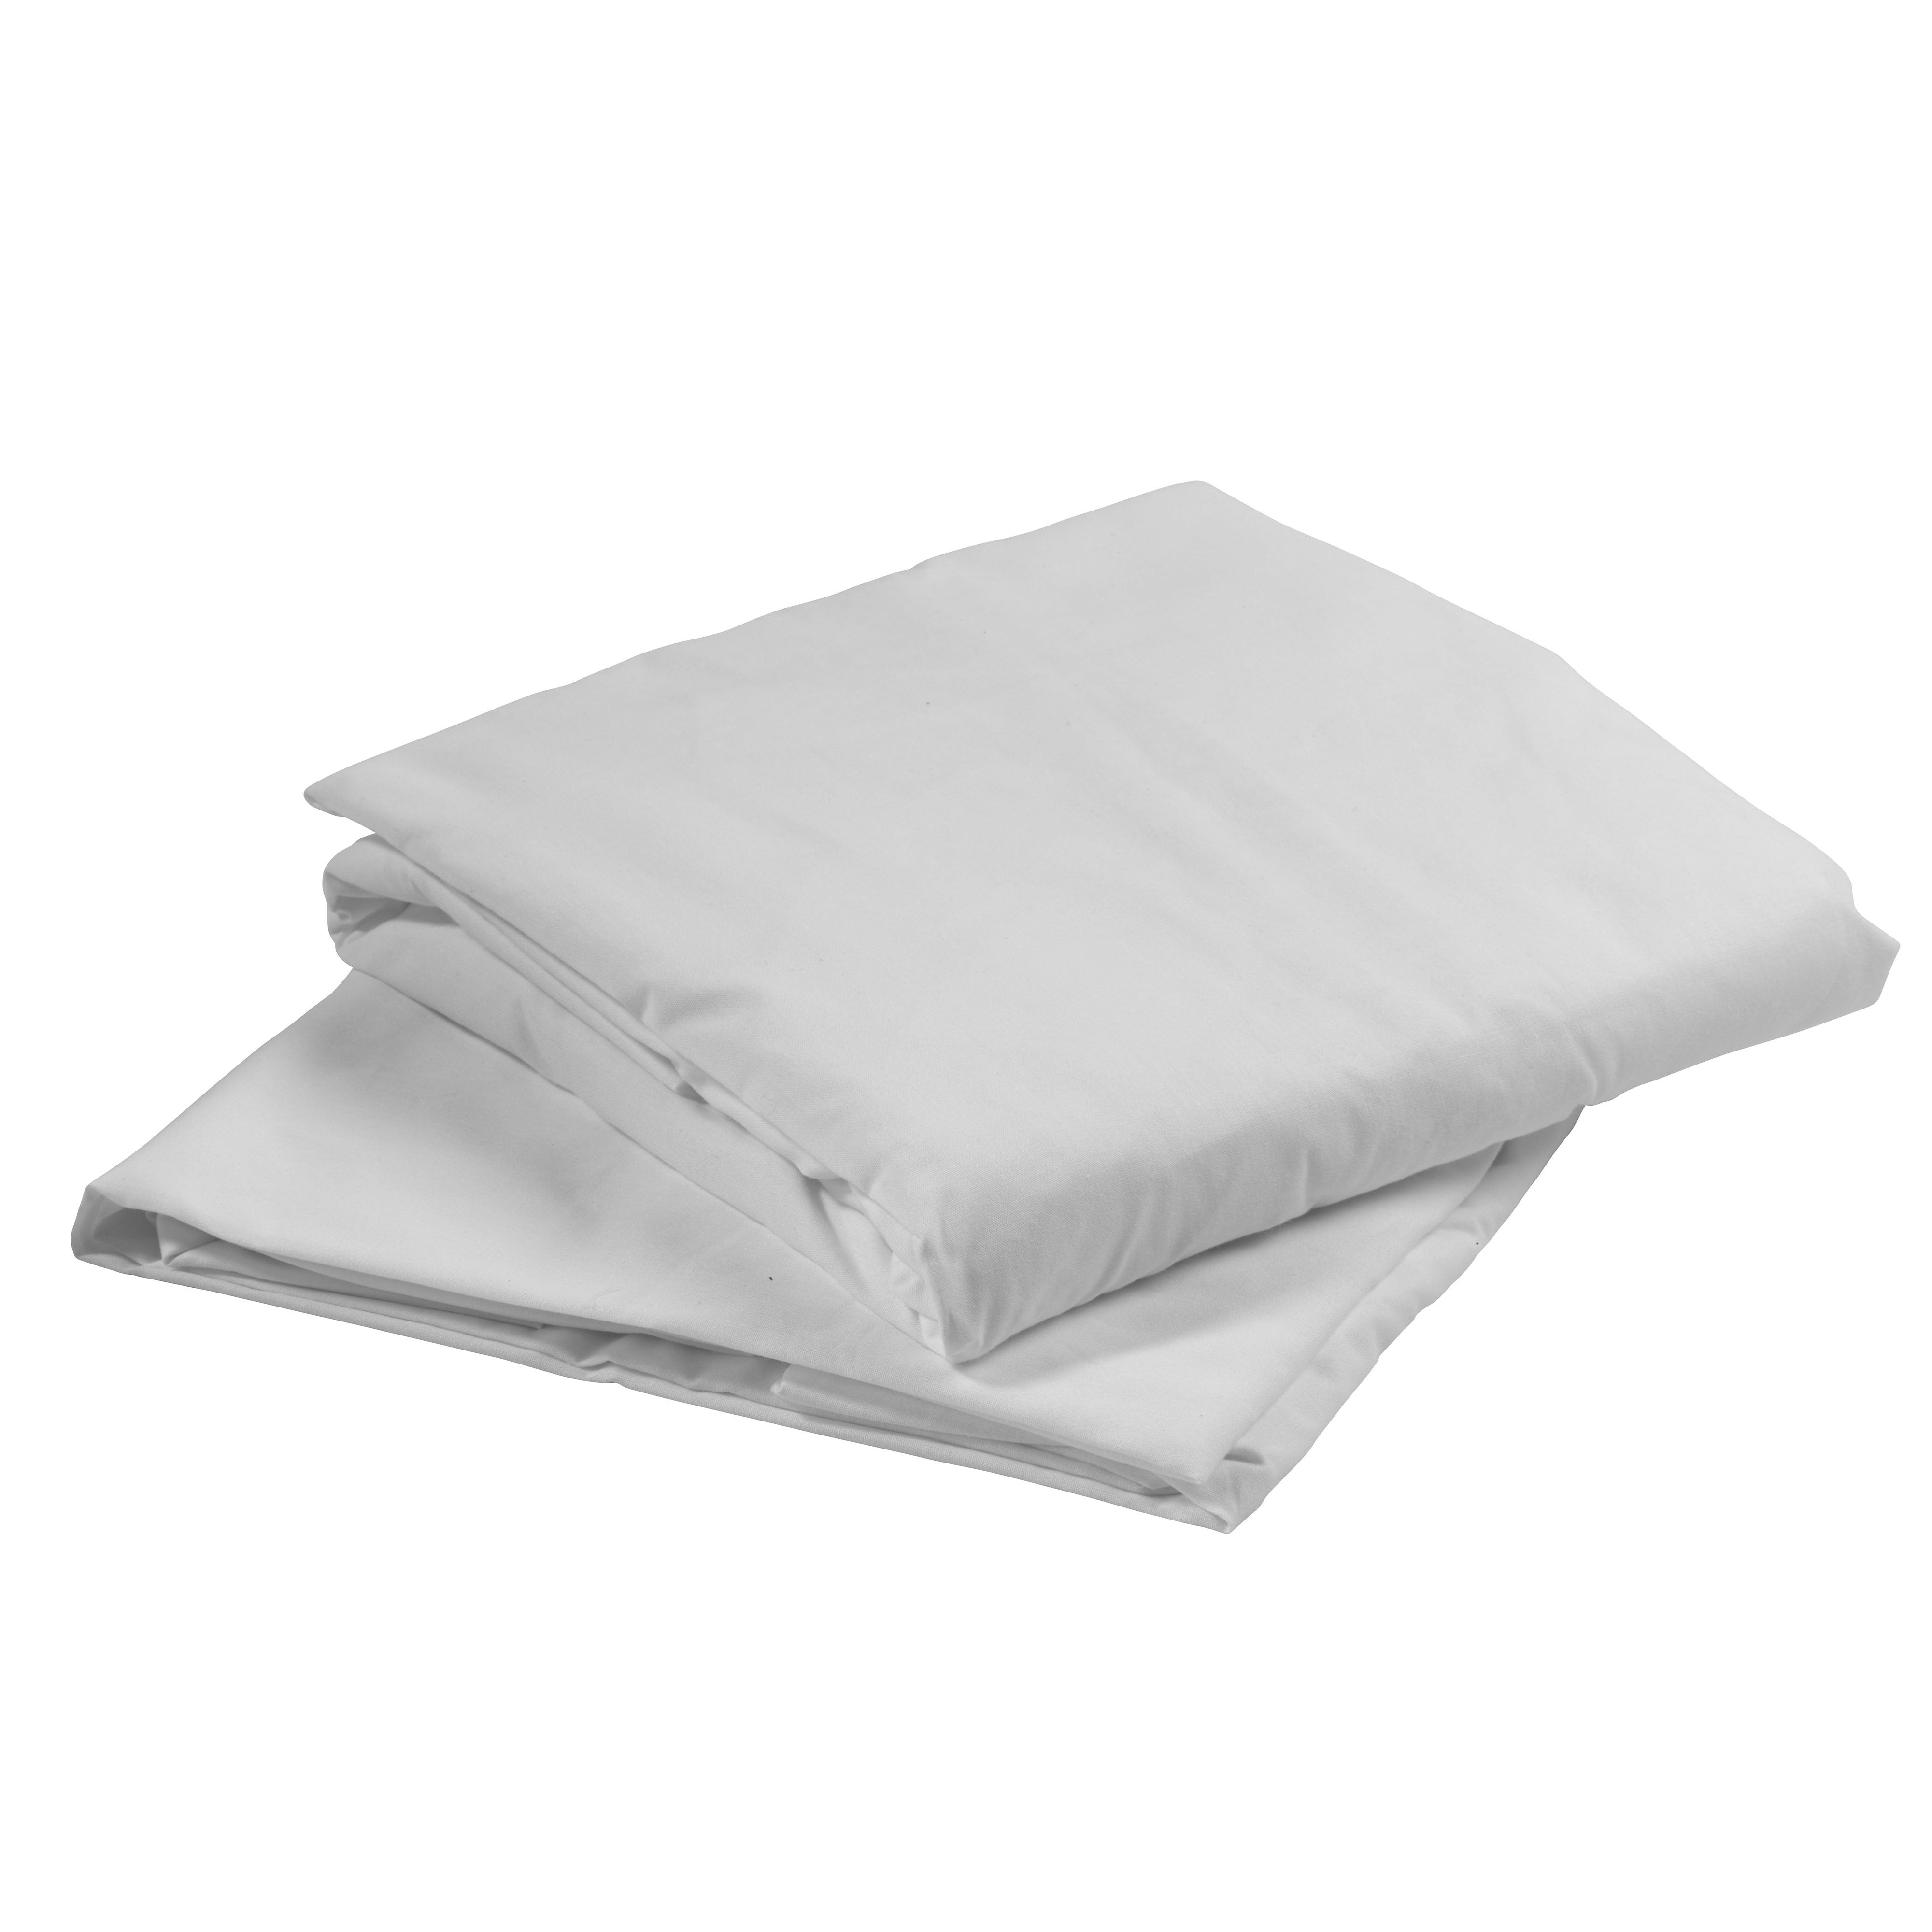 Hospital Bed Linen Kit